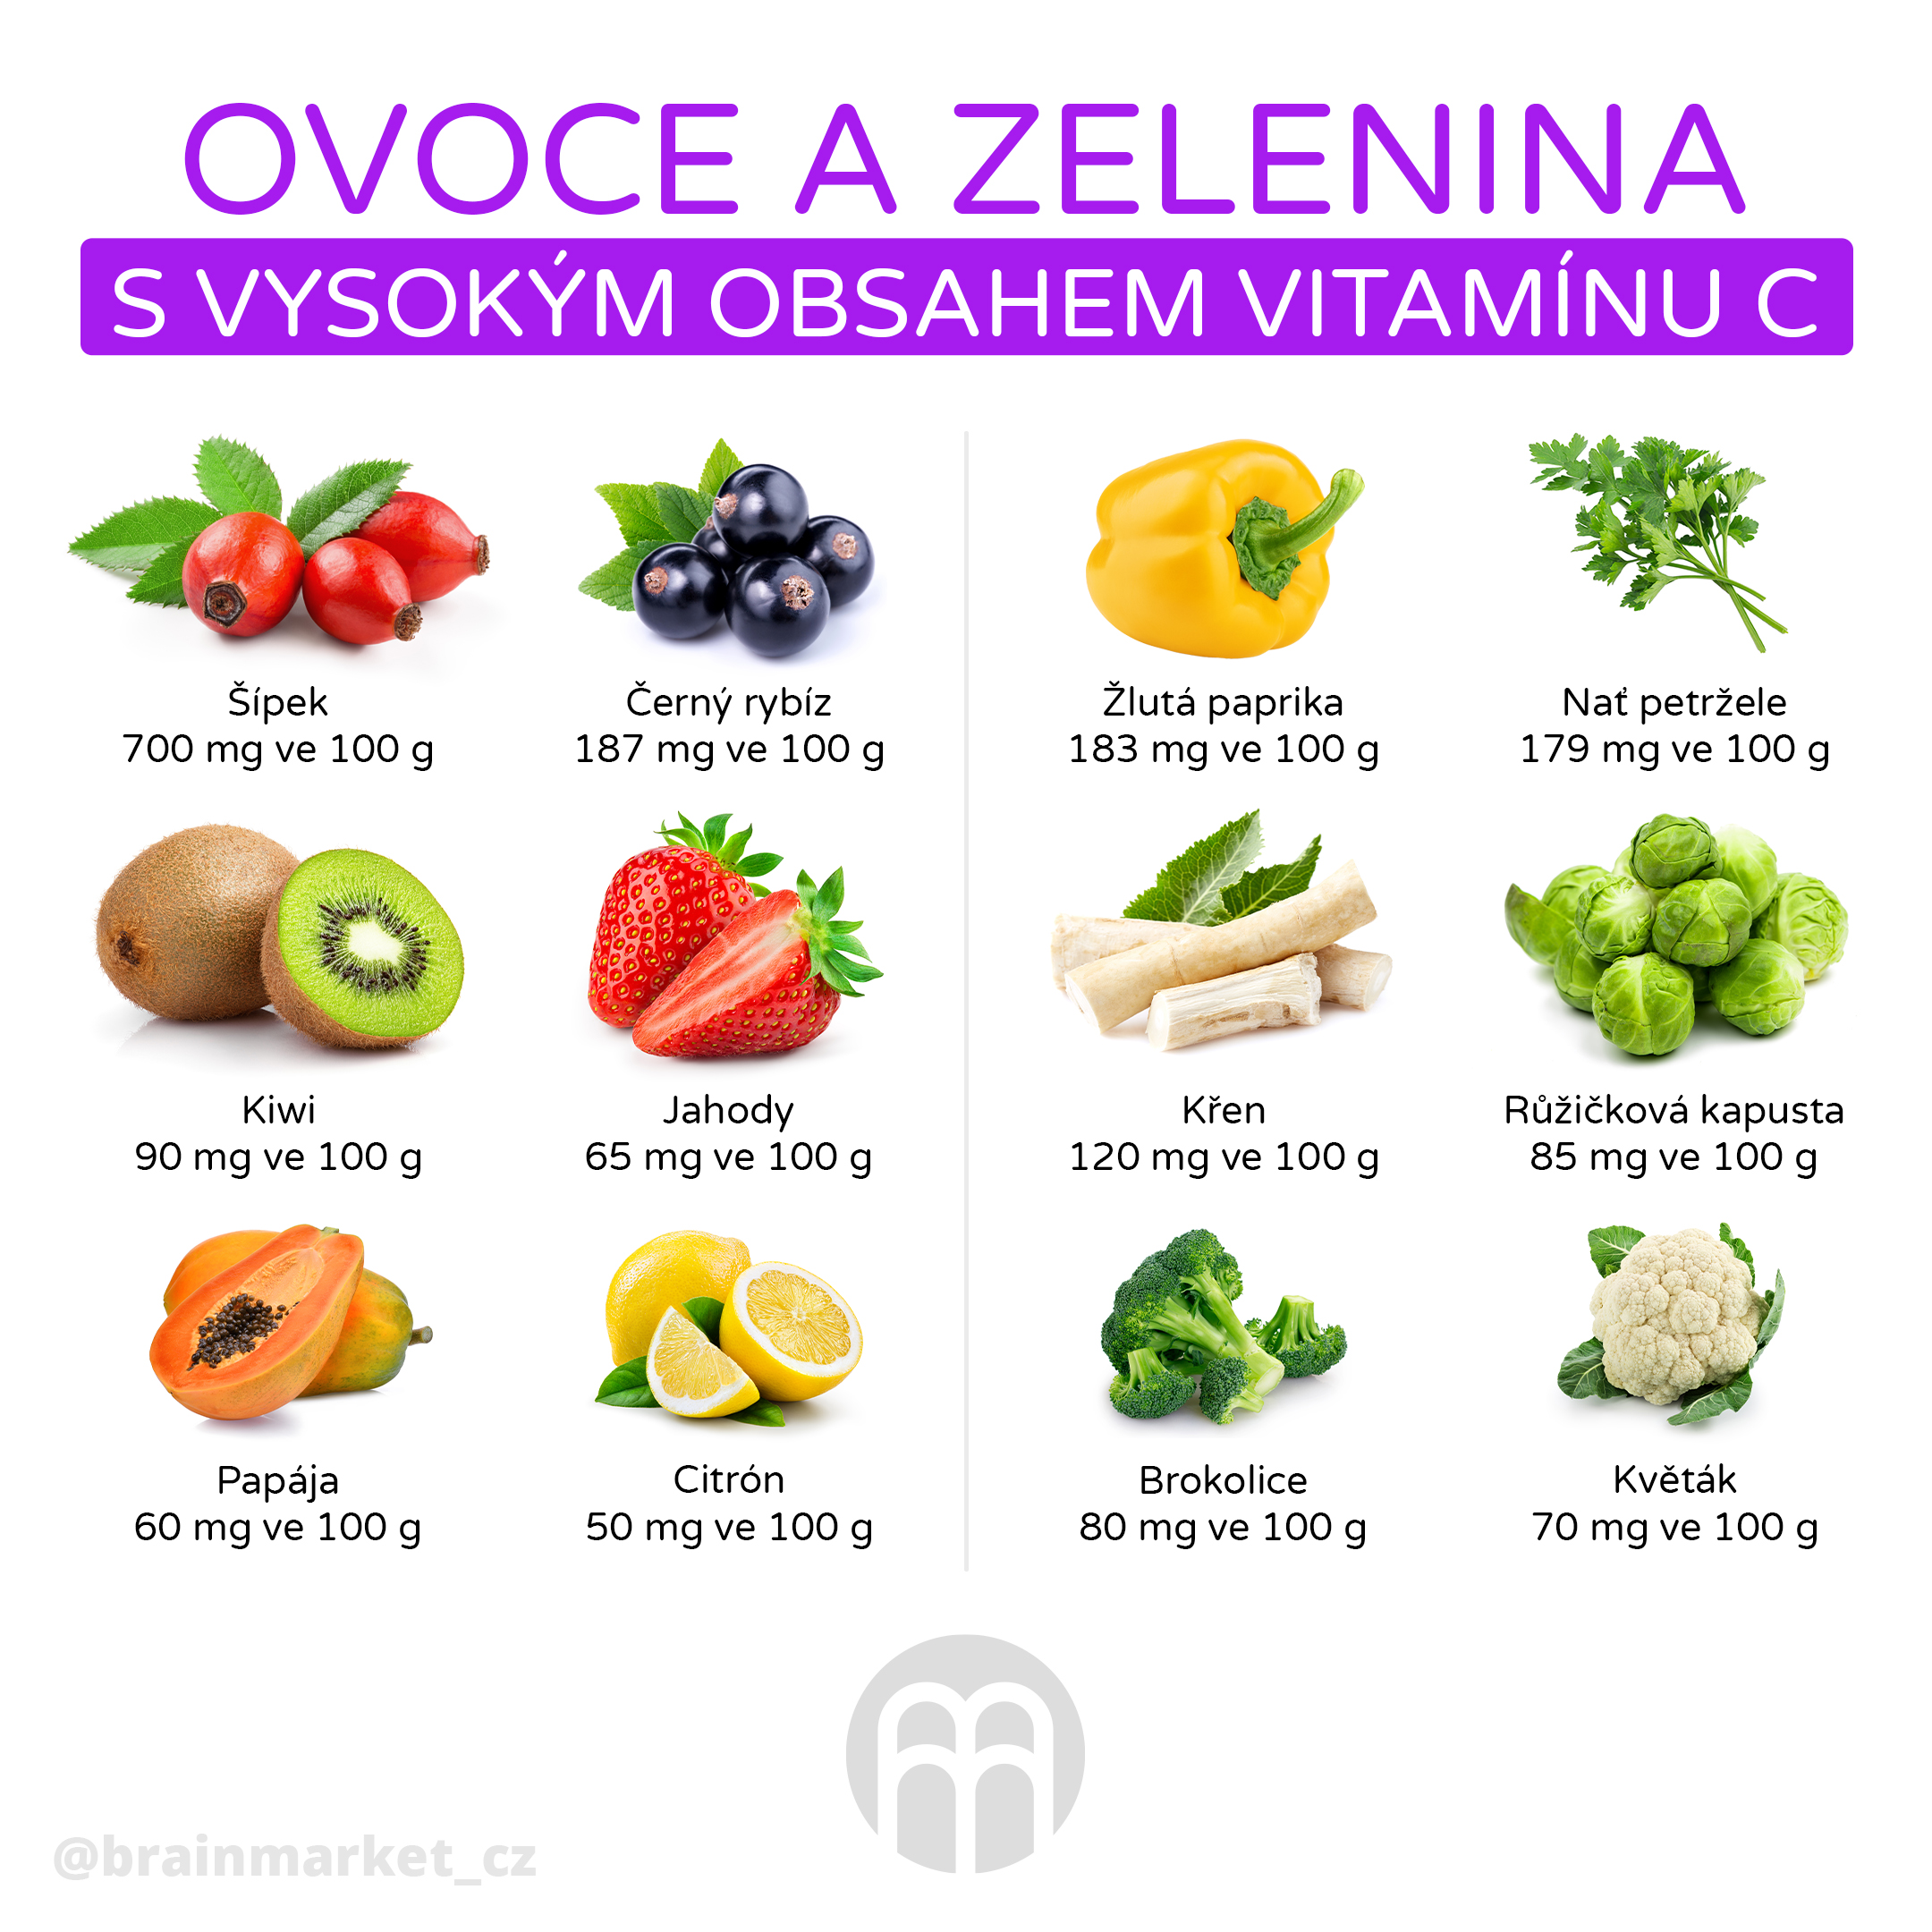 vitamin_c_ovoce_zelenina_infografika_brainmarket_cz_v2